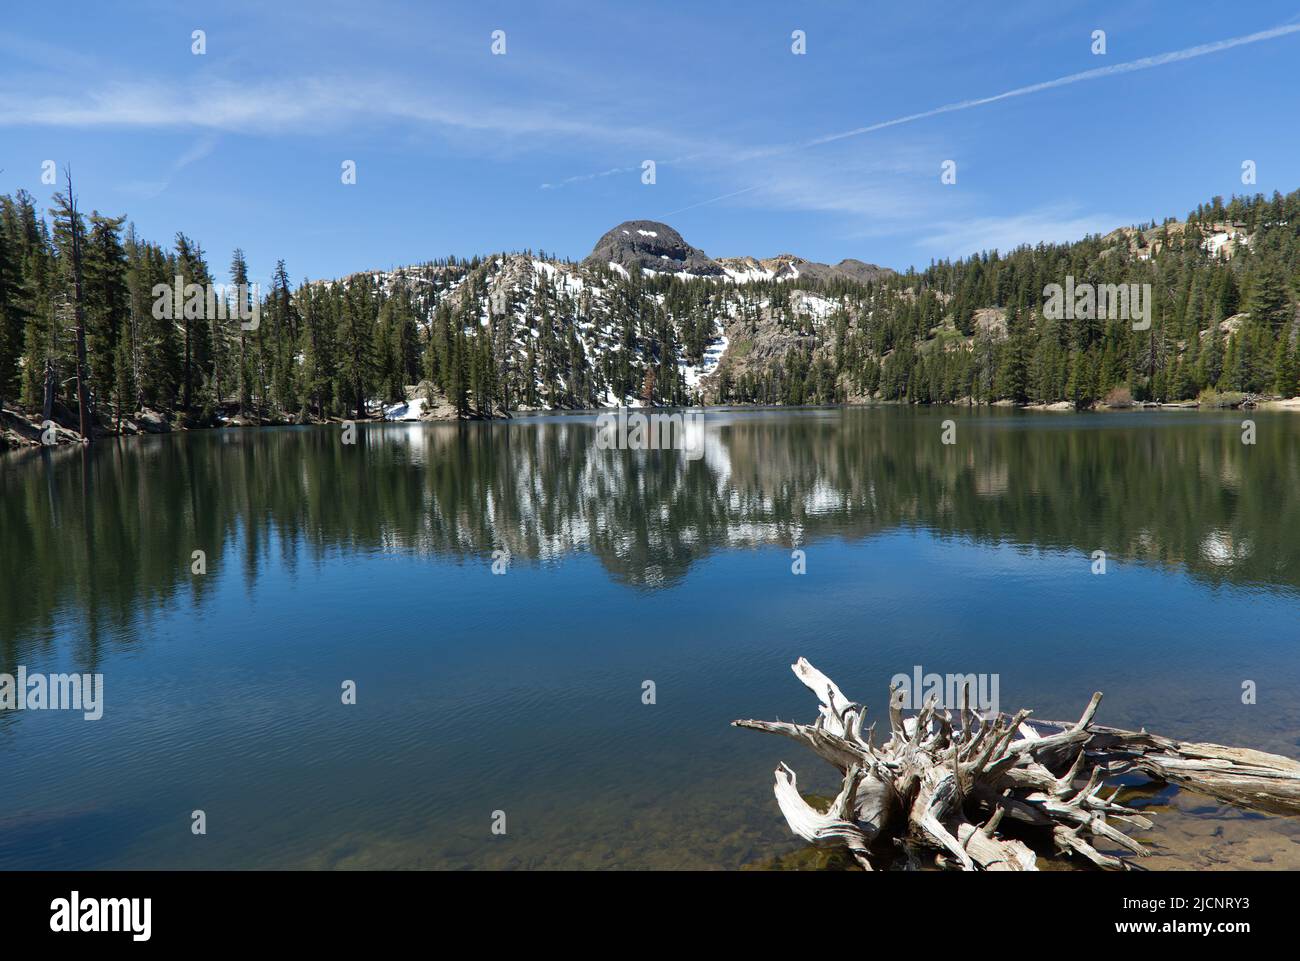 High Sierra Mountains in der Nähe von Markleeville, Kalifornien. Kinney Lake, Lake Alpine und Ebbets Peak werden angezeigt. Stockfoto